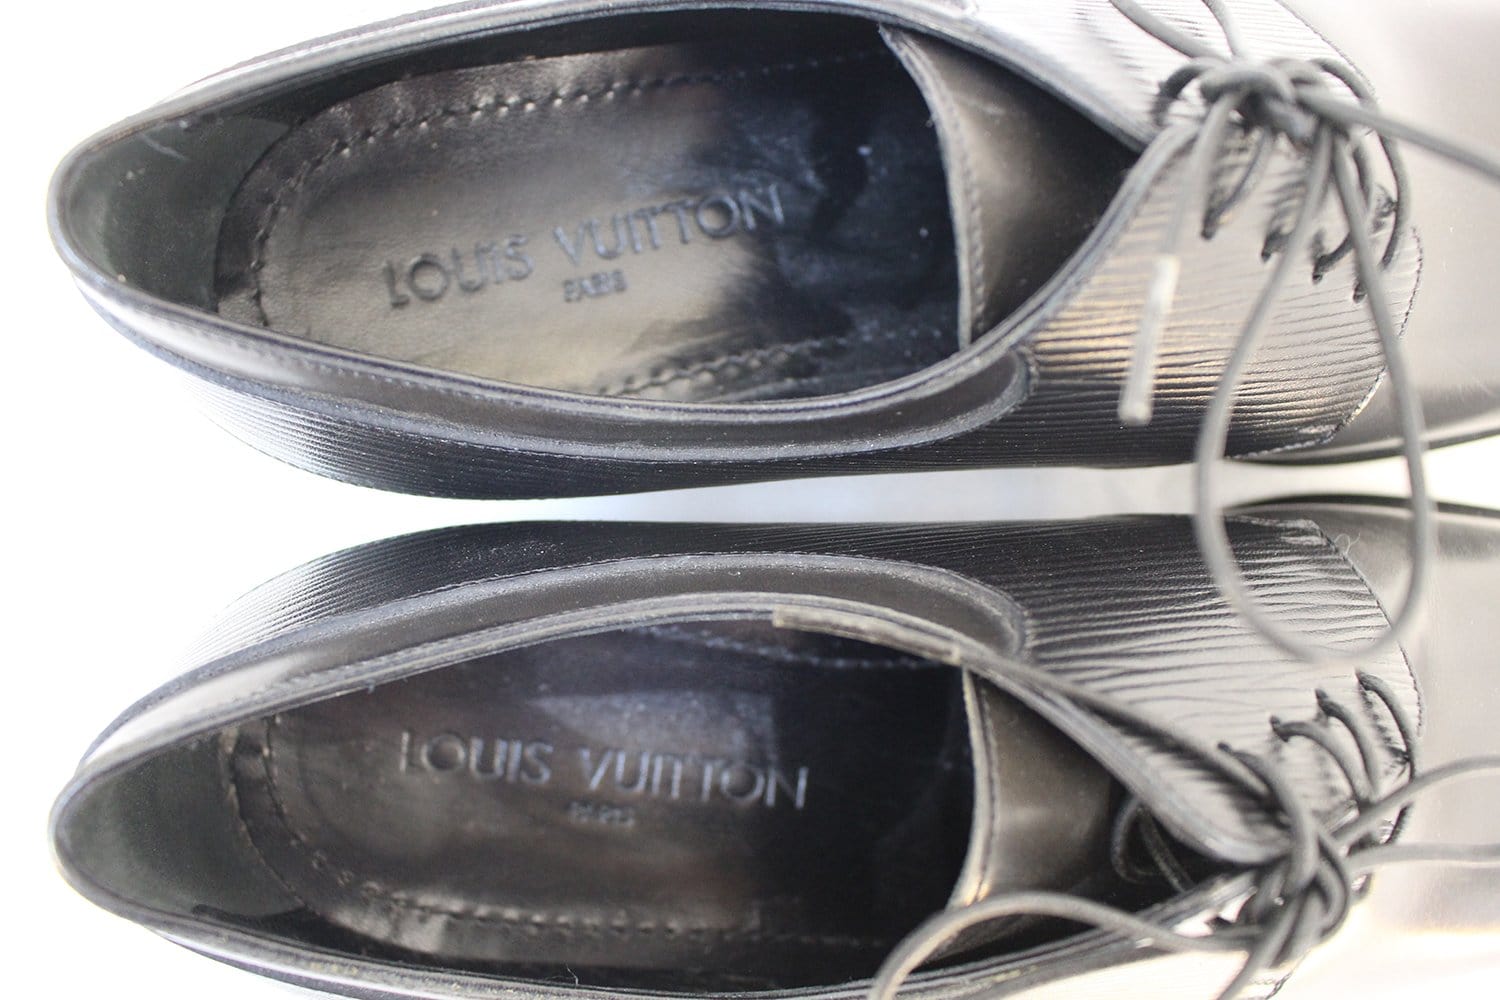 Mens dress shoes Louis Vuitton